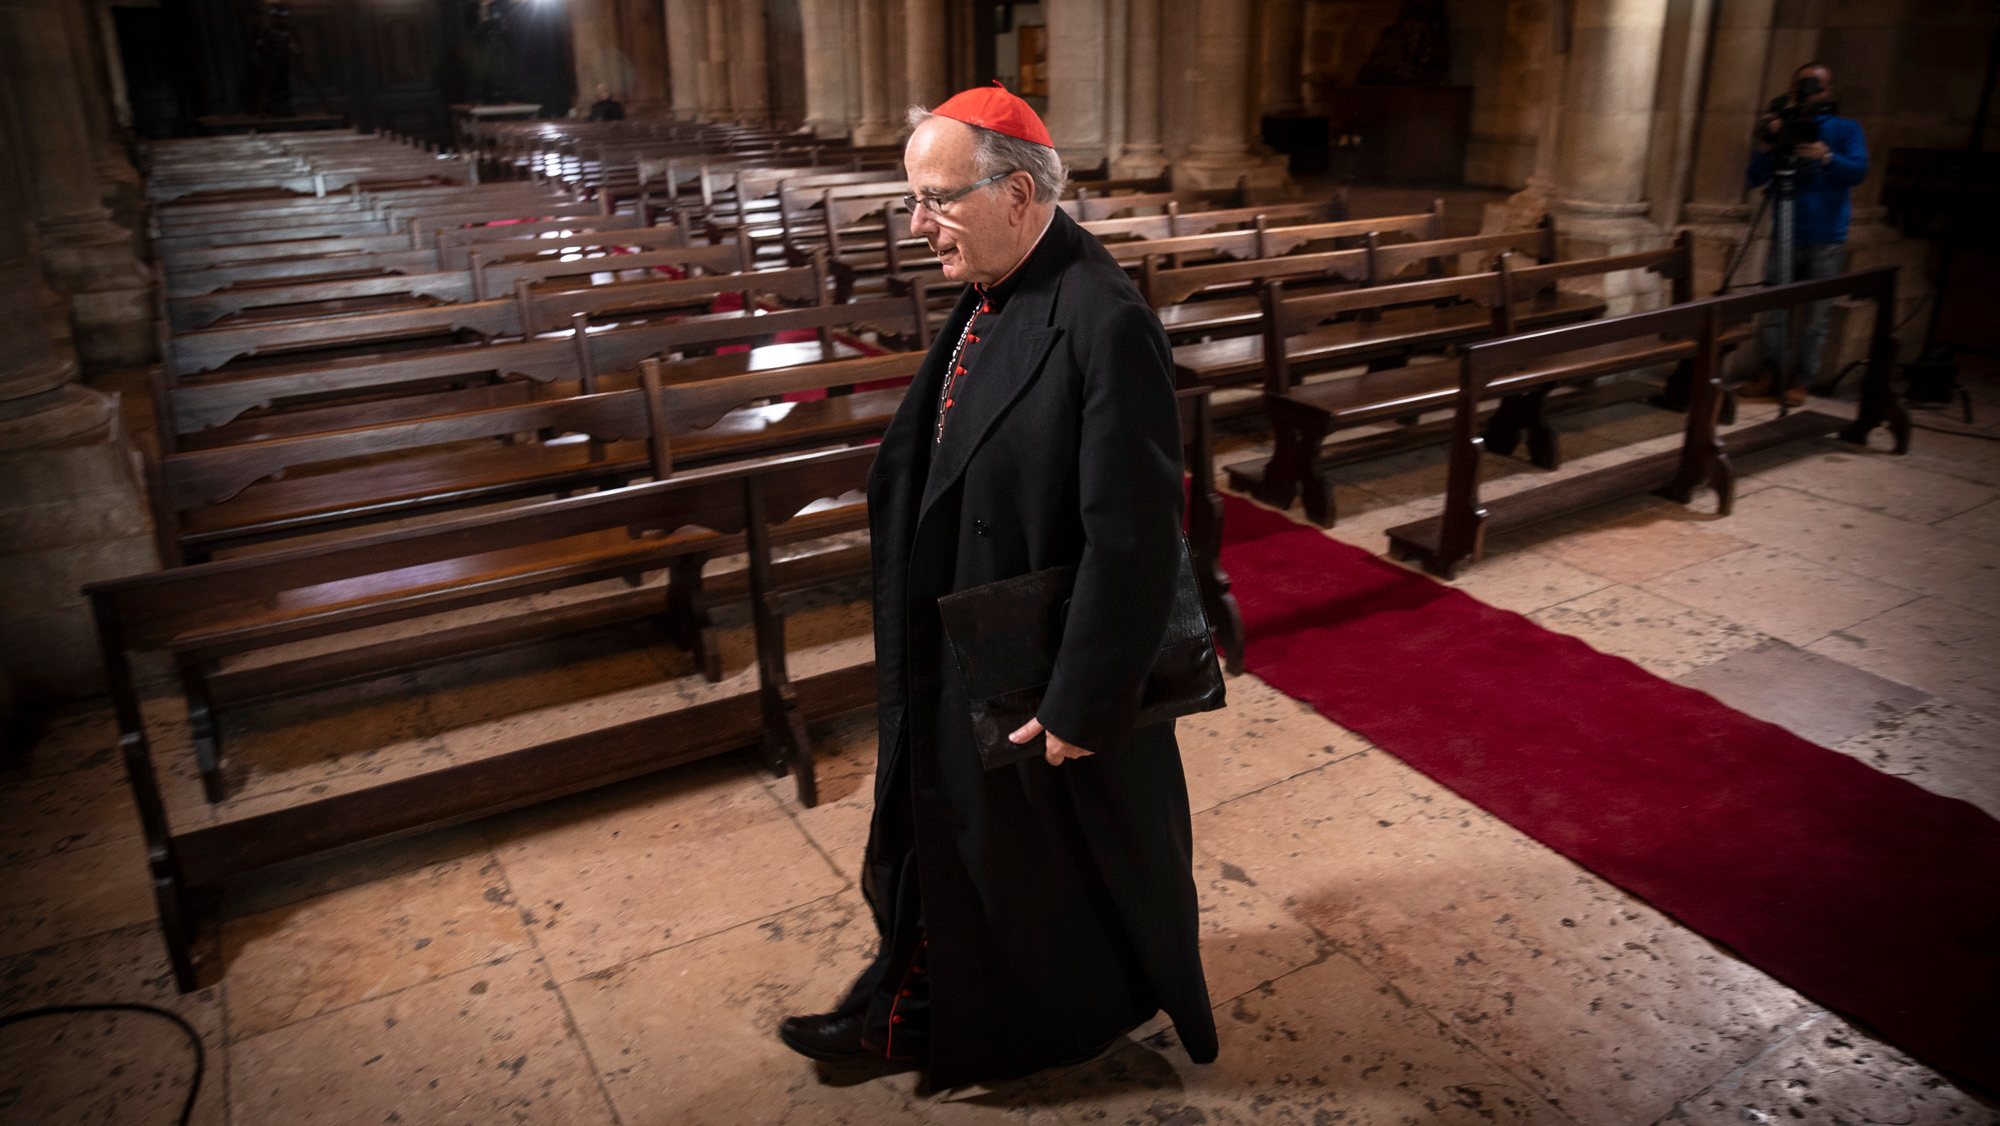 Cardeal-patriarca de Lisboa entregou o caso à polícia